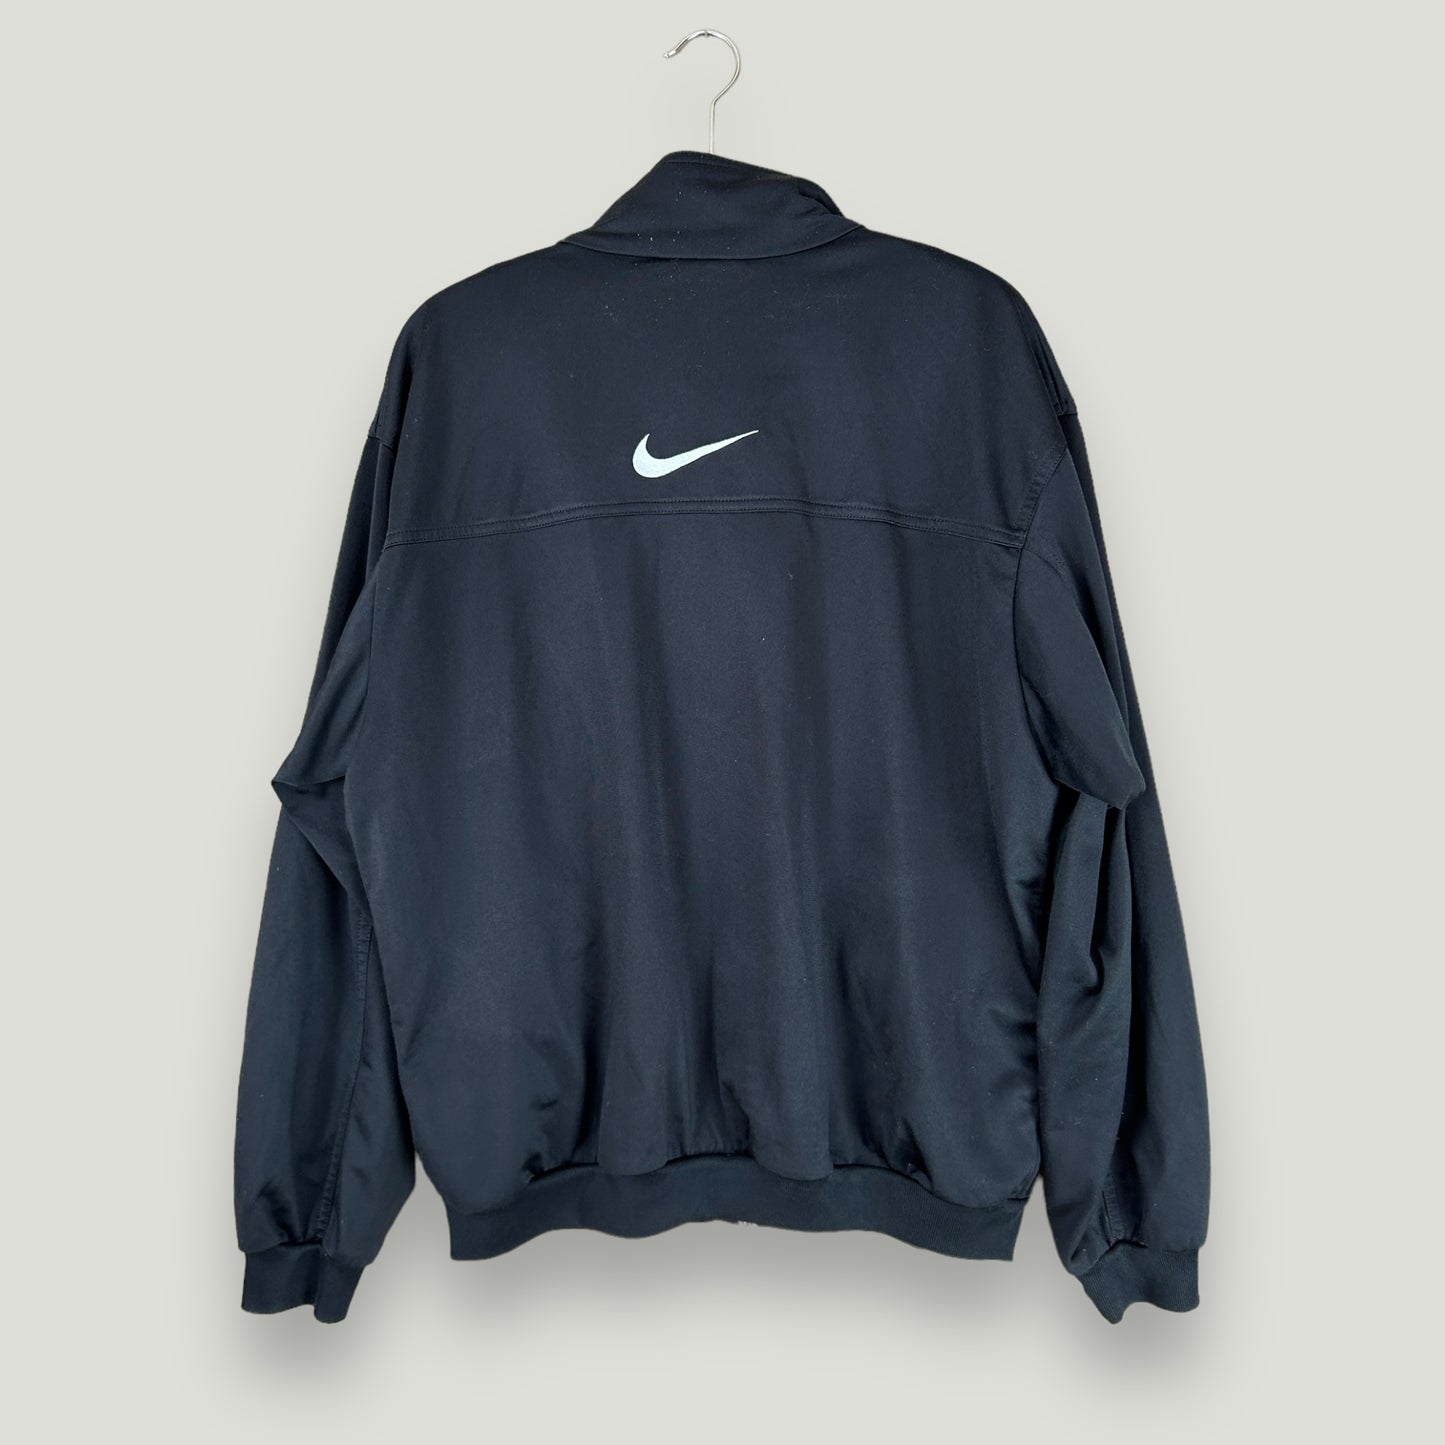 Schwarze Nike Trainingsjacke - Vintage Reborn